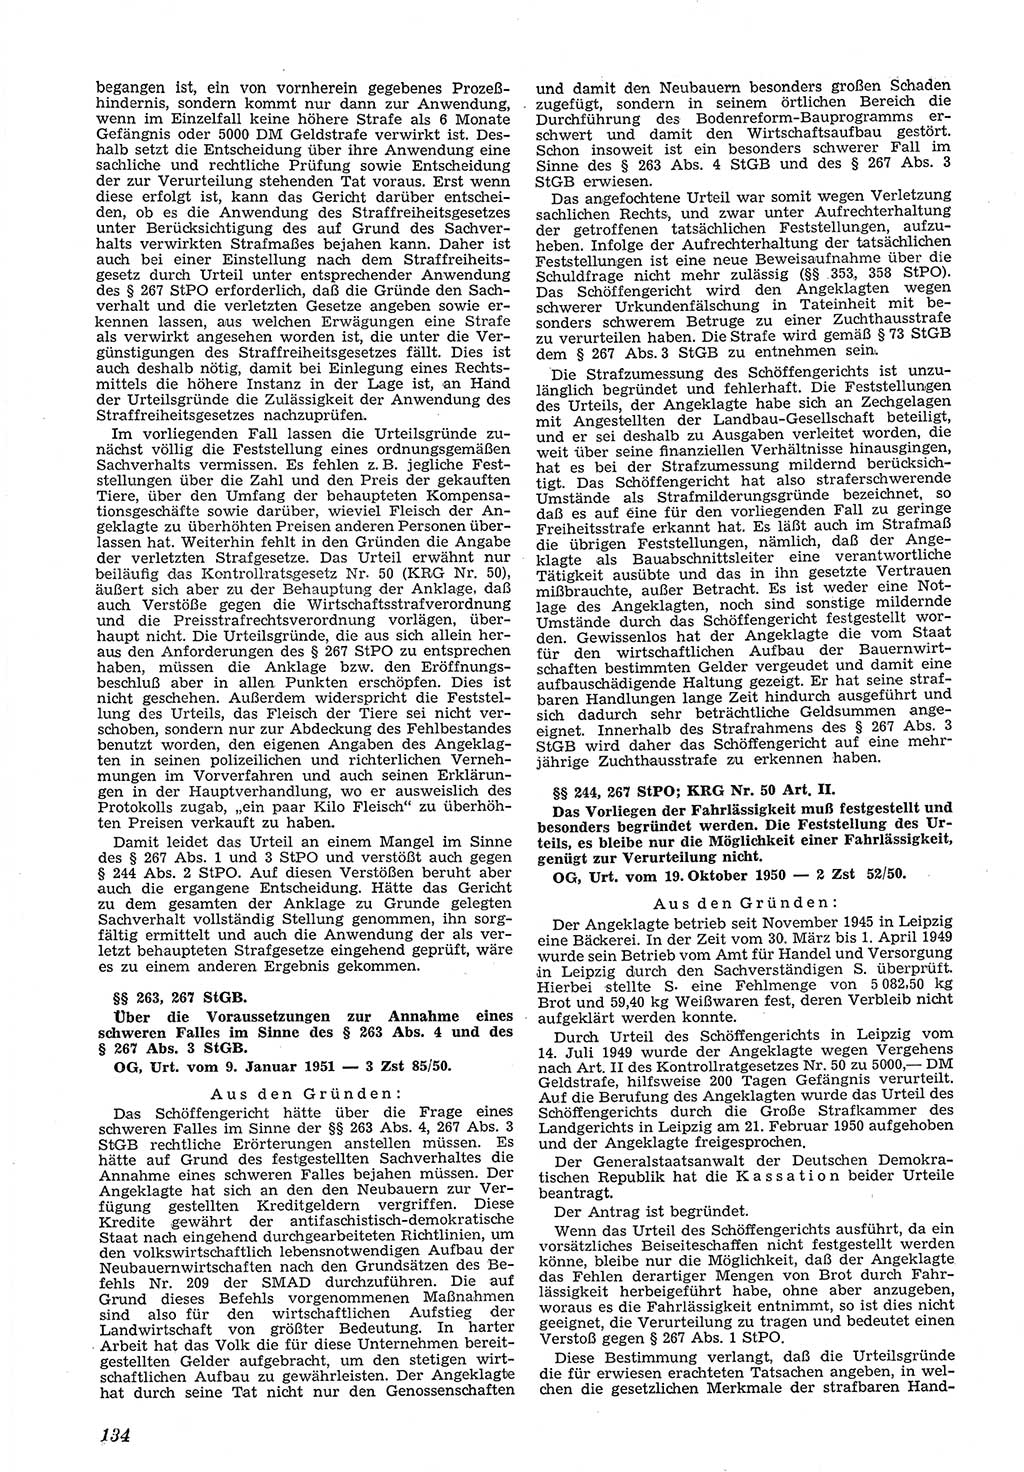 Neue Justiz (NJ), Zeitschrift für Recht und Rechtswissenschaft [Deutsche Demokratische Republik (DDR)], 5. Jahrgang 1951, Seite 134 (NJ DDR 1951, S. 134)